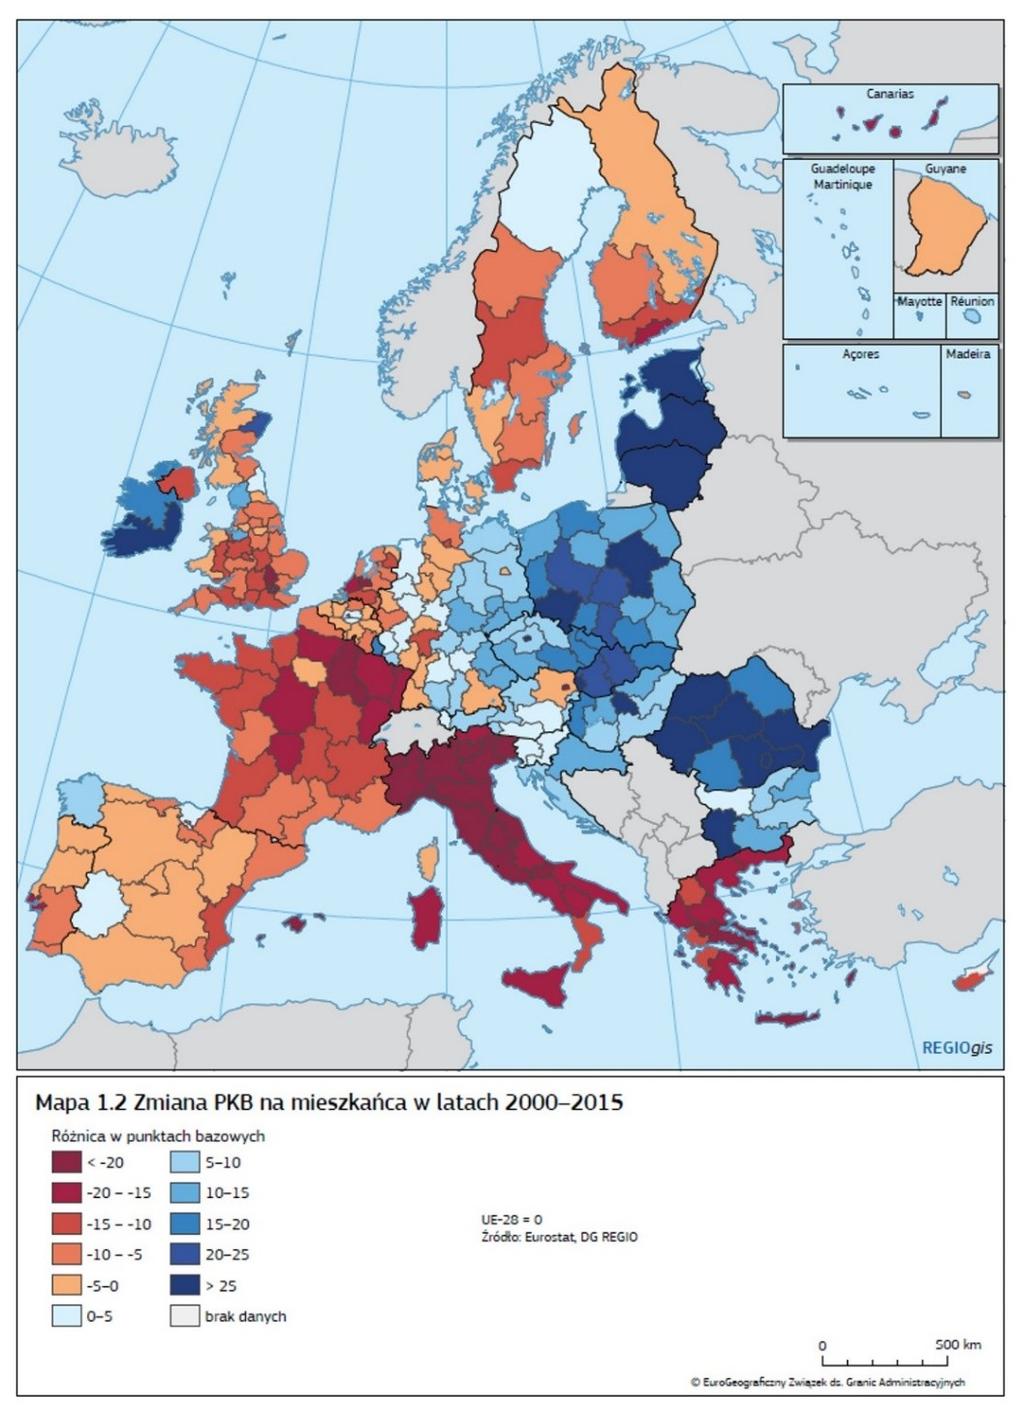 Stan rozwoju Unii Europejskiej w układzie NUTS 2 według 7 raportu spójności Województwa dolnośląskie i mazowieckie to regiony o jednych z najwyższych wzrostów PKB per capita Układ NUTS 2 nie pokazuje